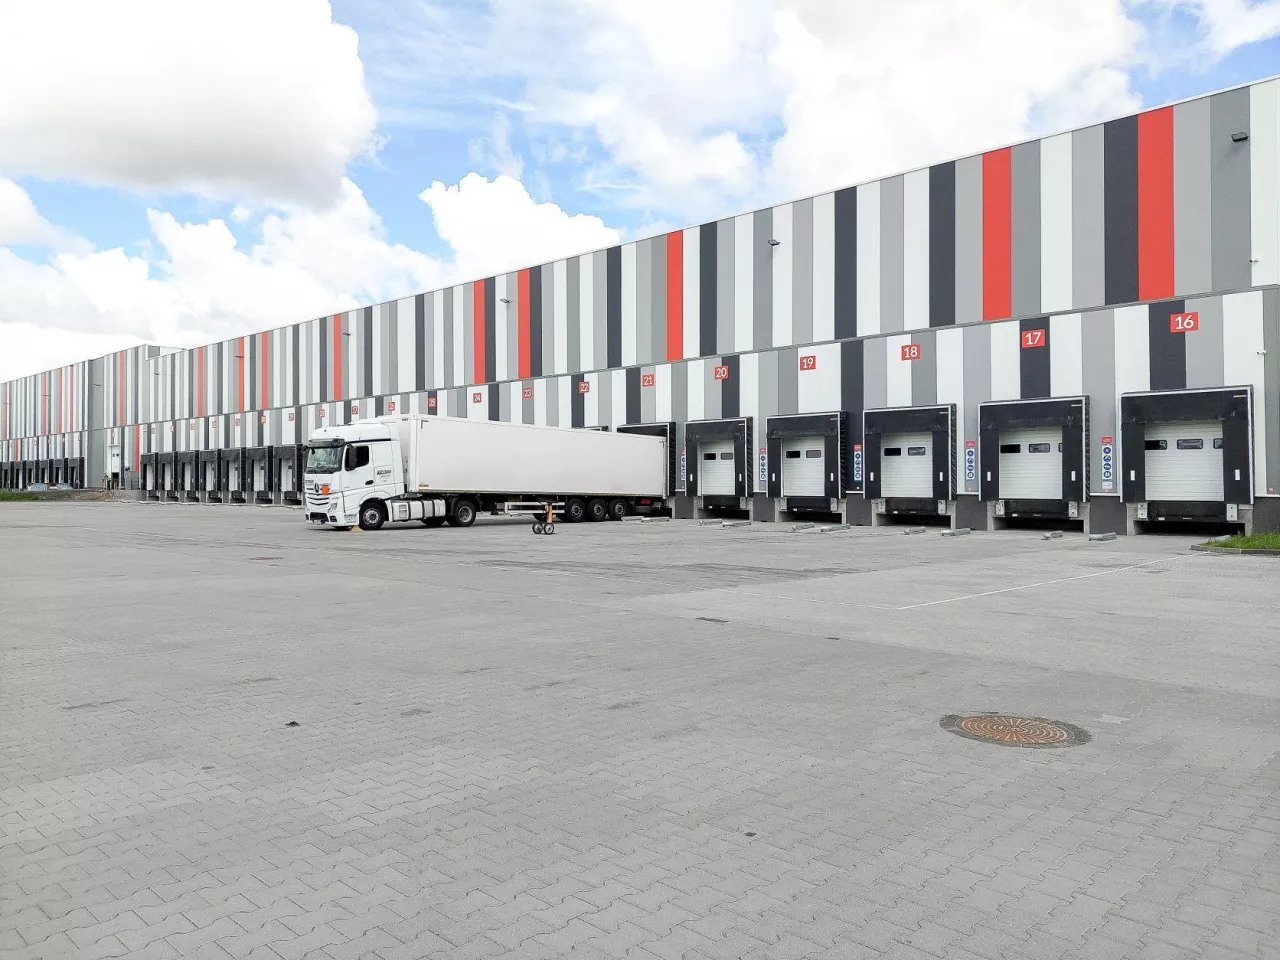 Nowy magazyn Rohlig Suus Logistics, o powierzchni 12,6 tys. mkw., rozpoczyna pełną działalność operacyjną od 1 sierpnia 2022 r. (fot. Rohlig Suus Logistics)